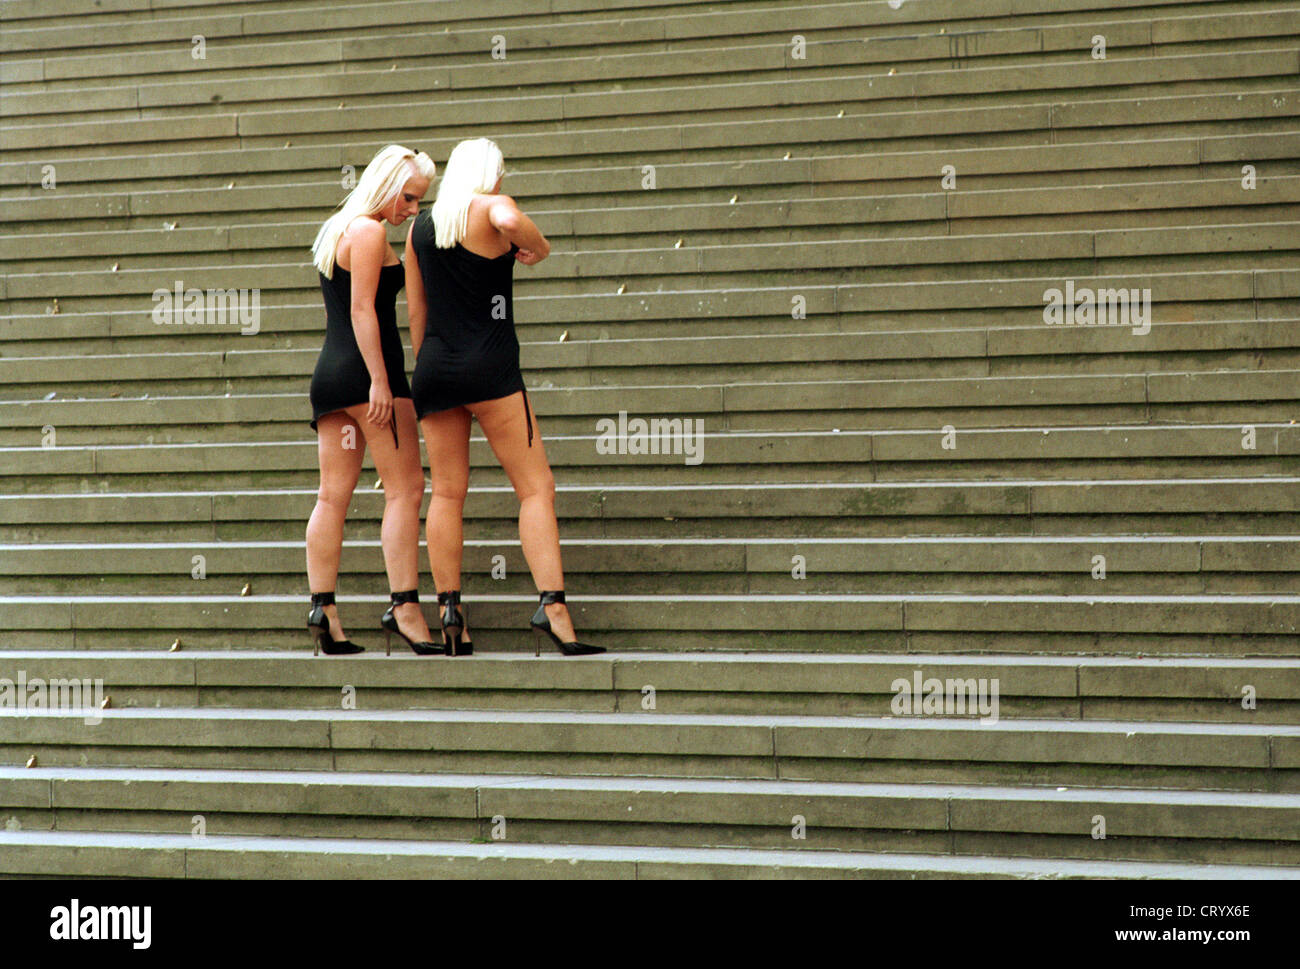 Berlino, donne sulle scale del teatro Foto Stock